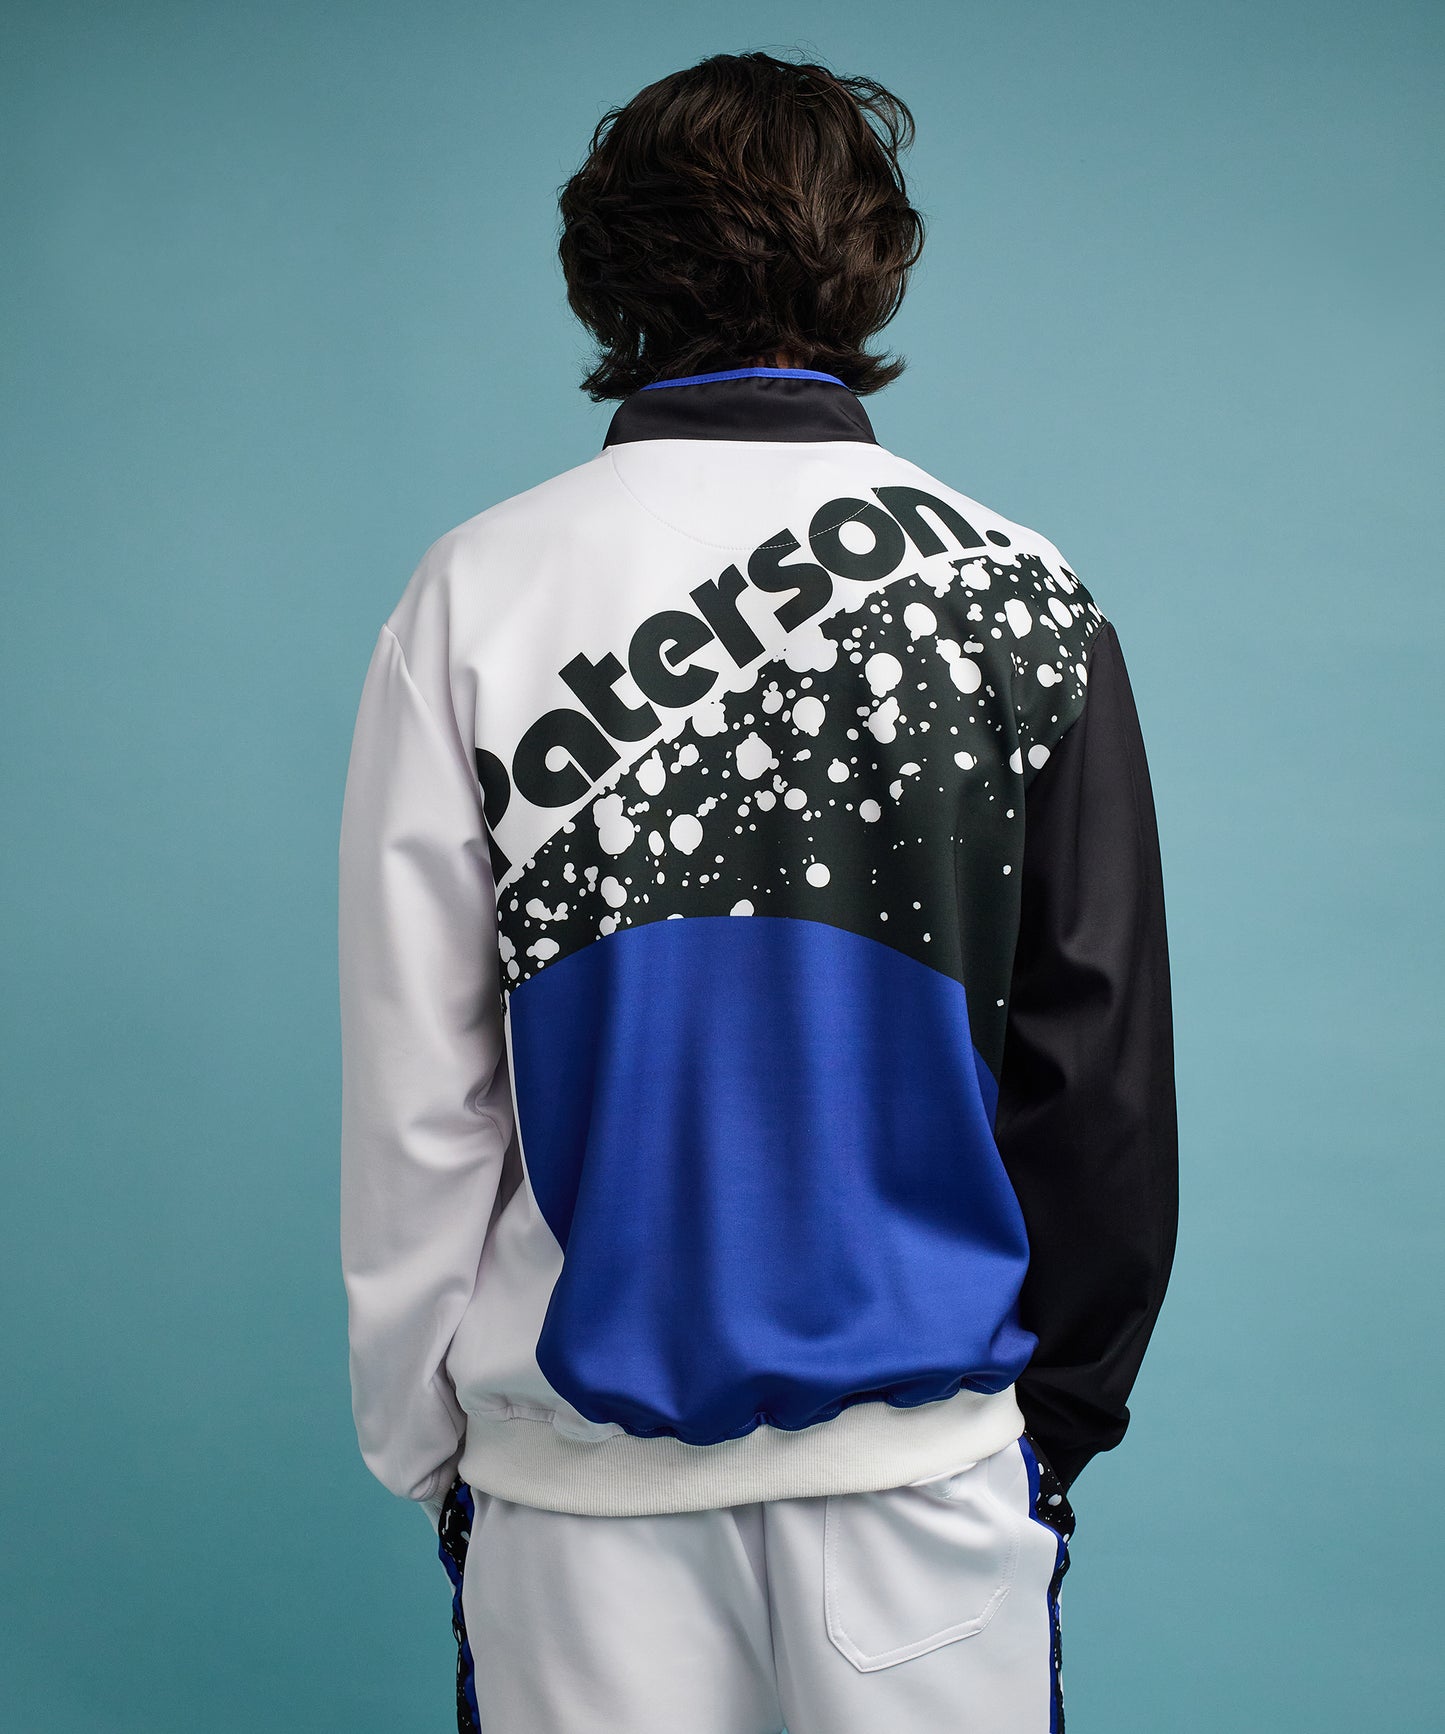 Roddick Track Jacket - White And Royal